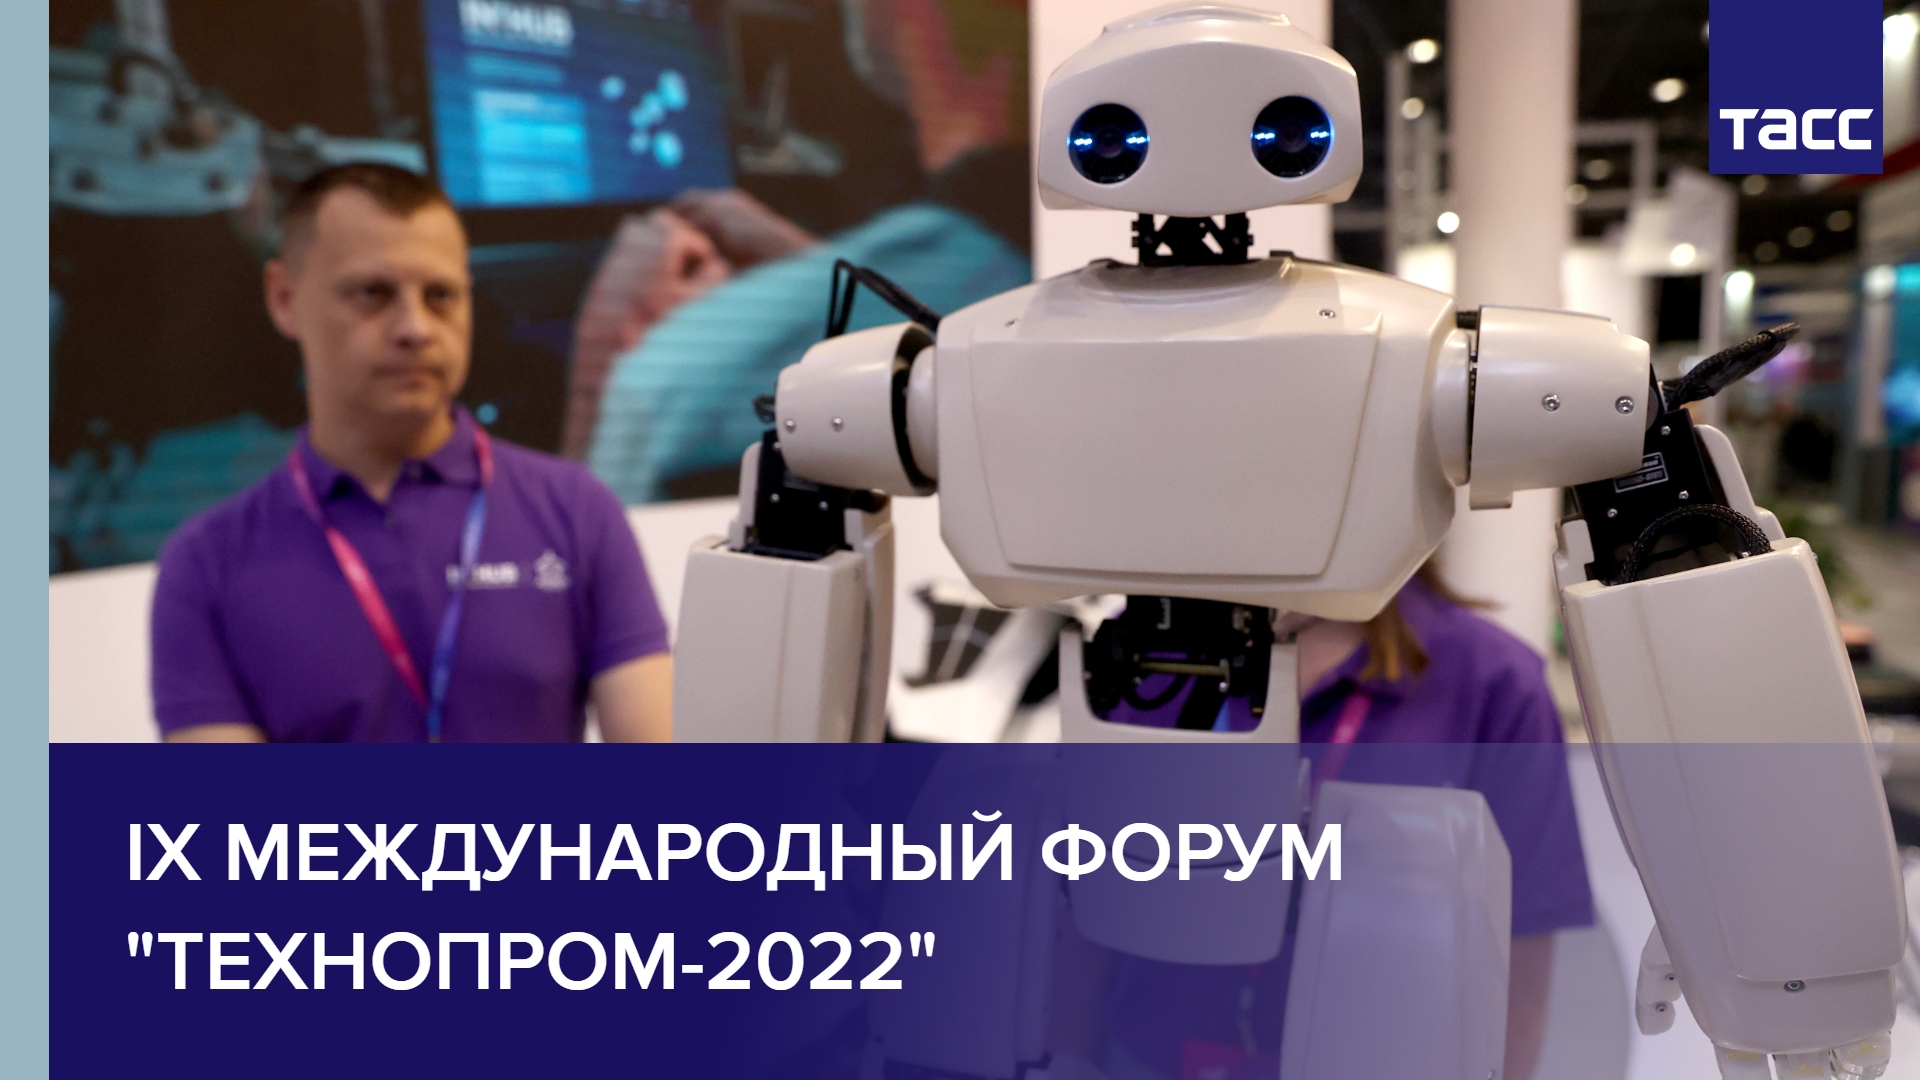 IX Международный форум "Технопром-2022" проходит в Новосибирске #shorts